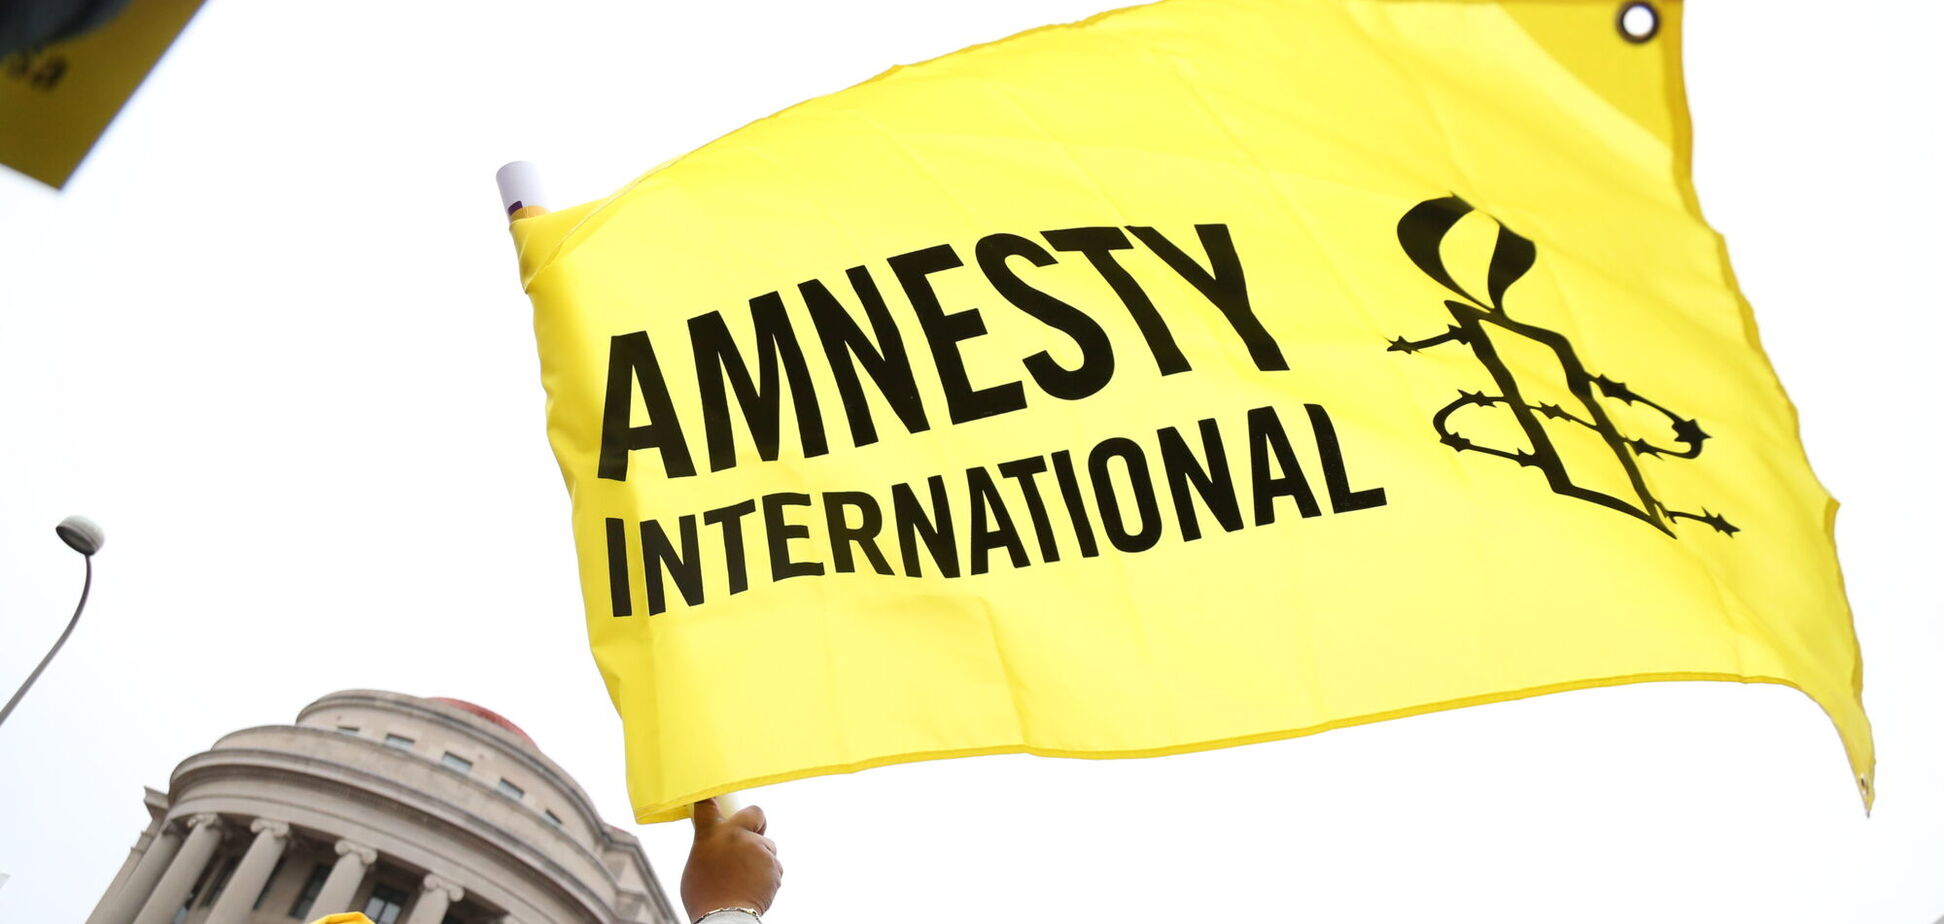 Шизофренические отчеты неизбежны: кого действительно защищает Amnesty International